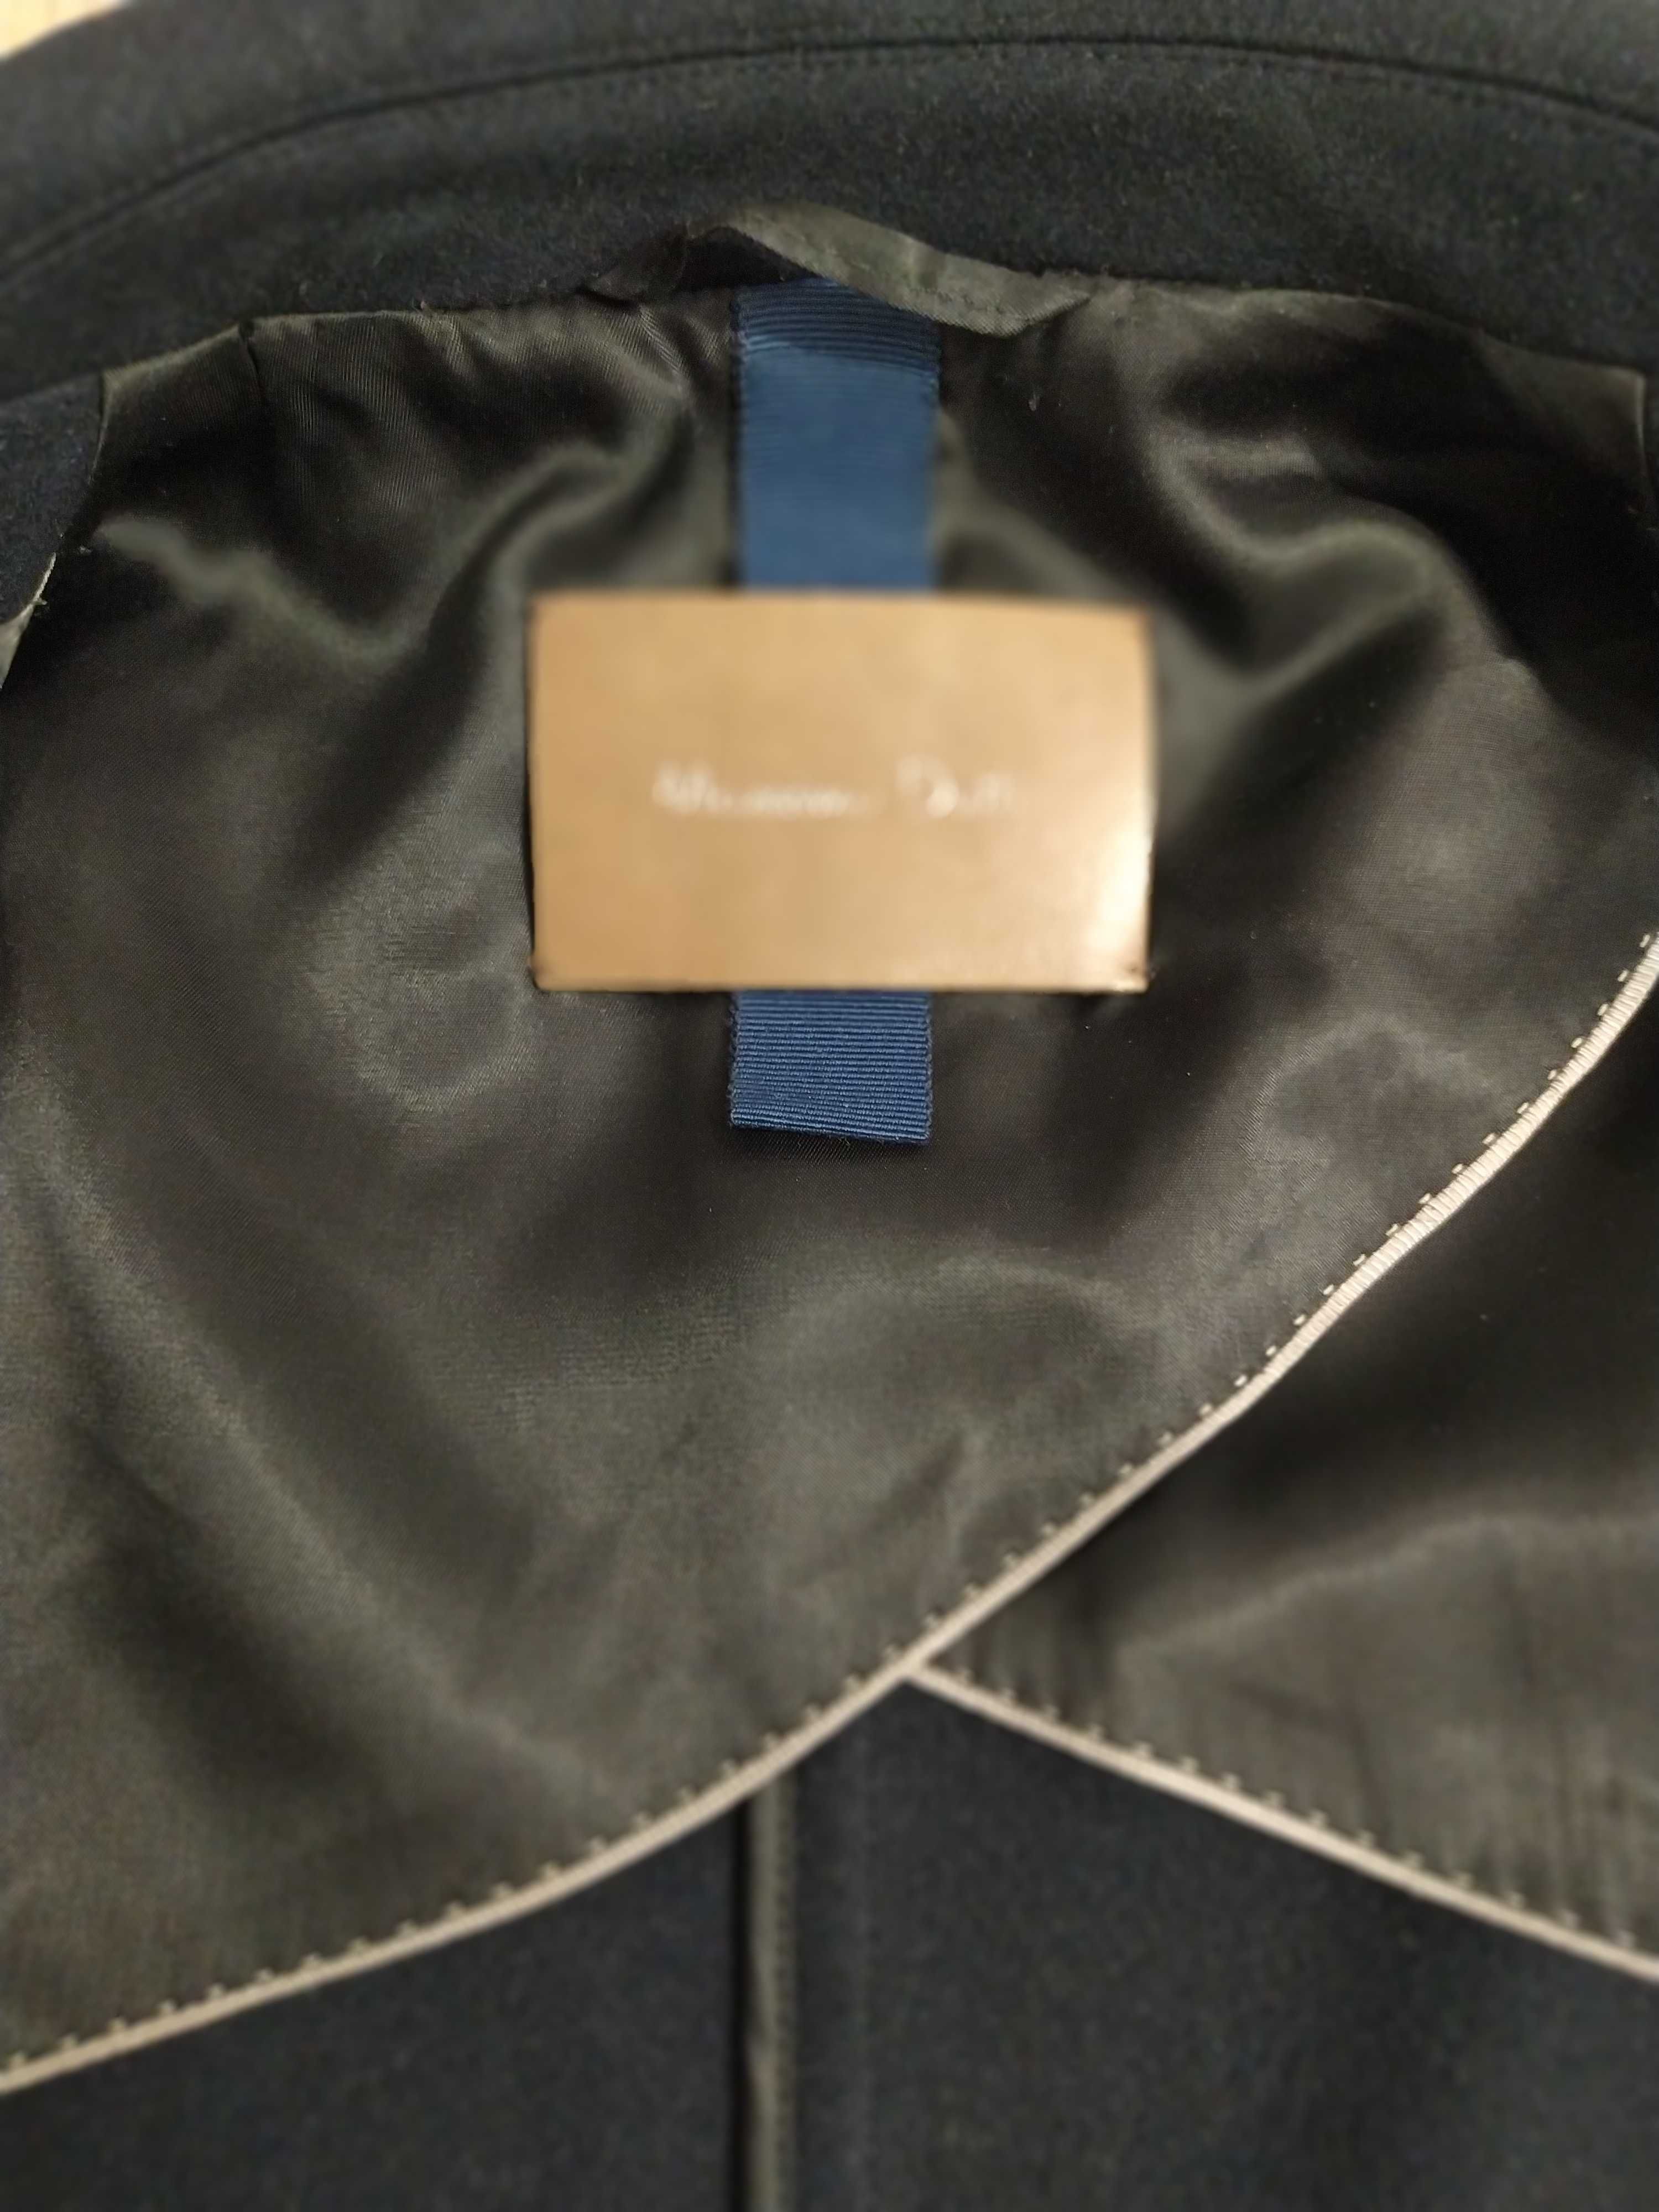 Пальто Massimo Dutti, синее, размер S, 100 процентов шерсть.